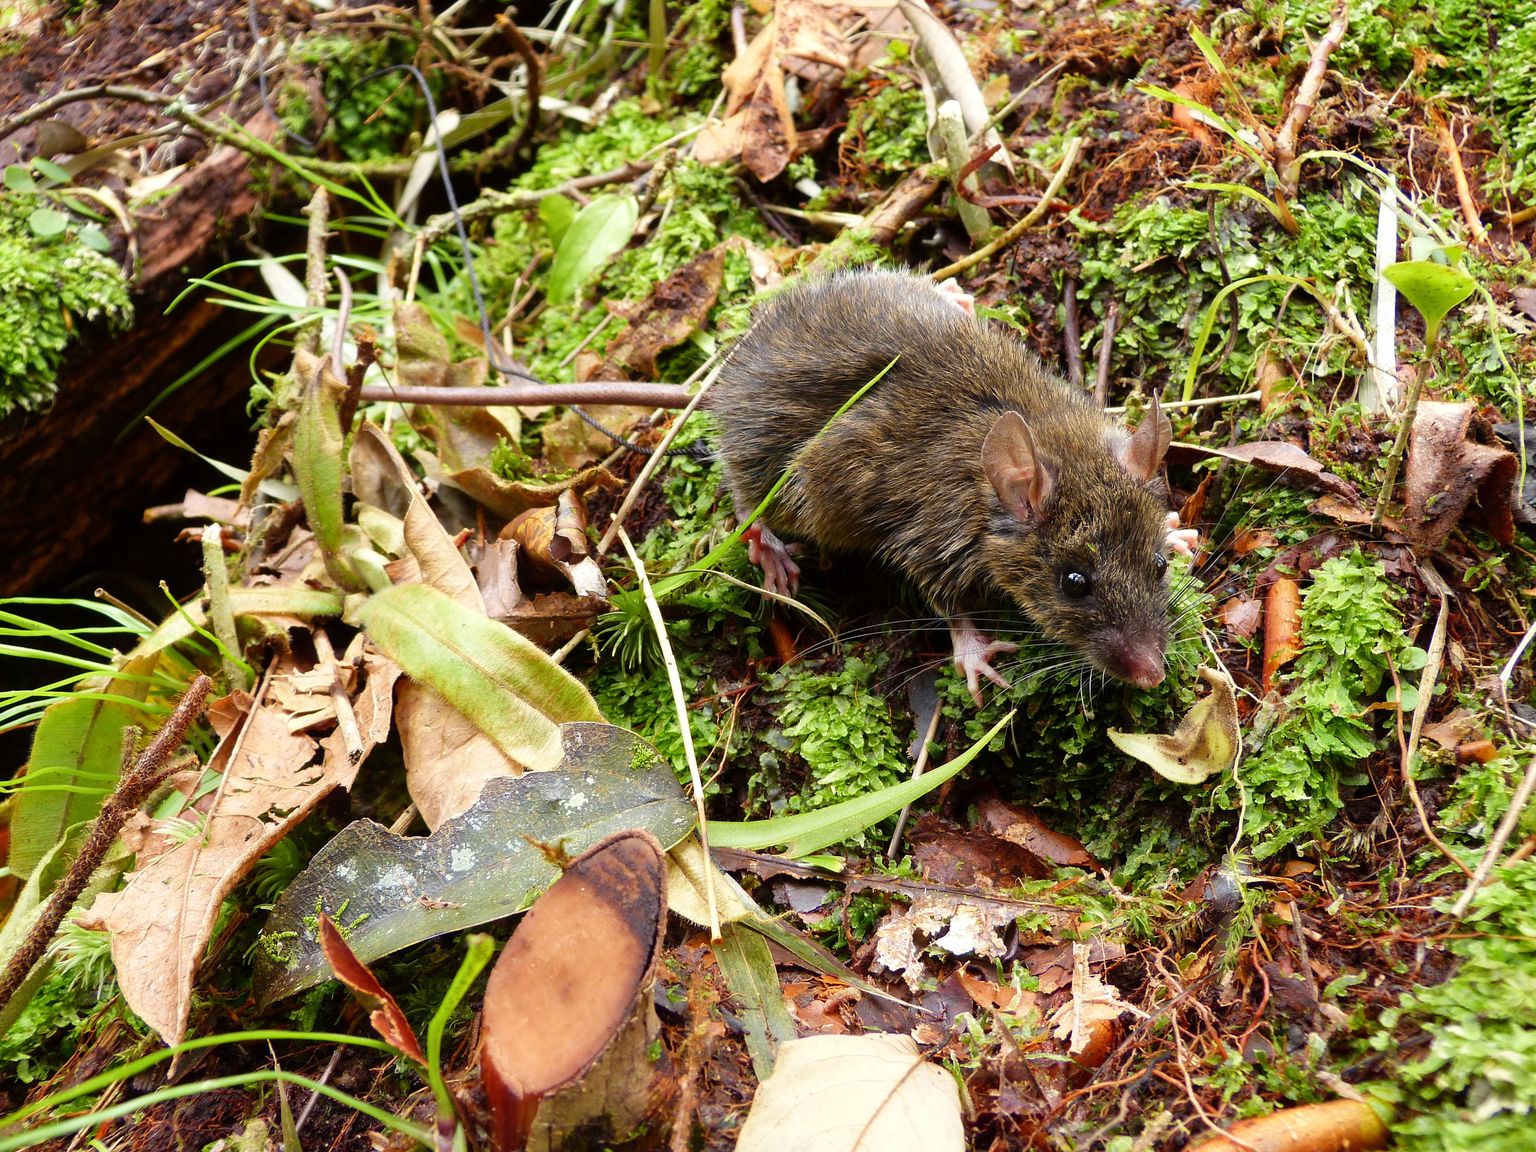 Mindoro saare hiired arenesid välja palju väiksemal alal kui bioloogid võimalikuks pidasid